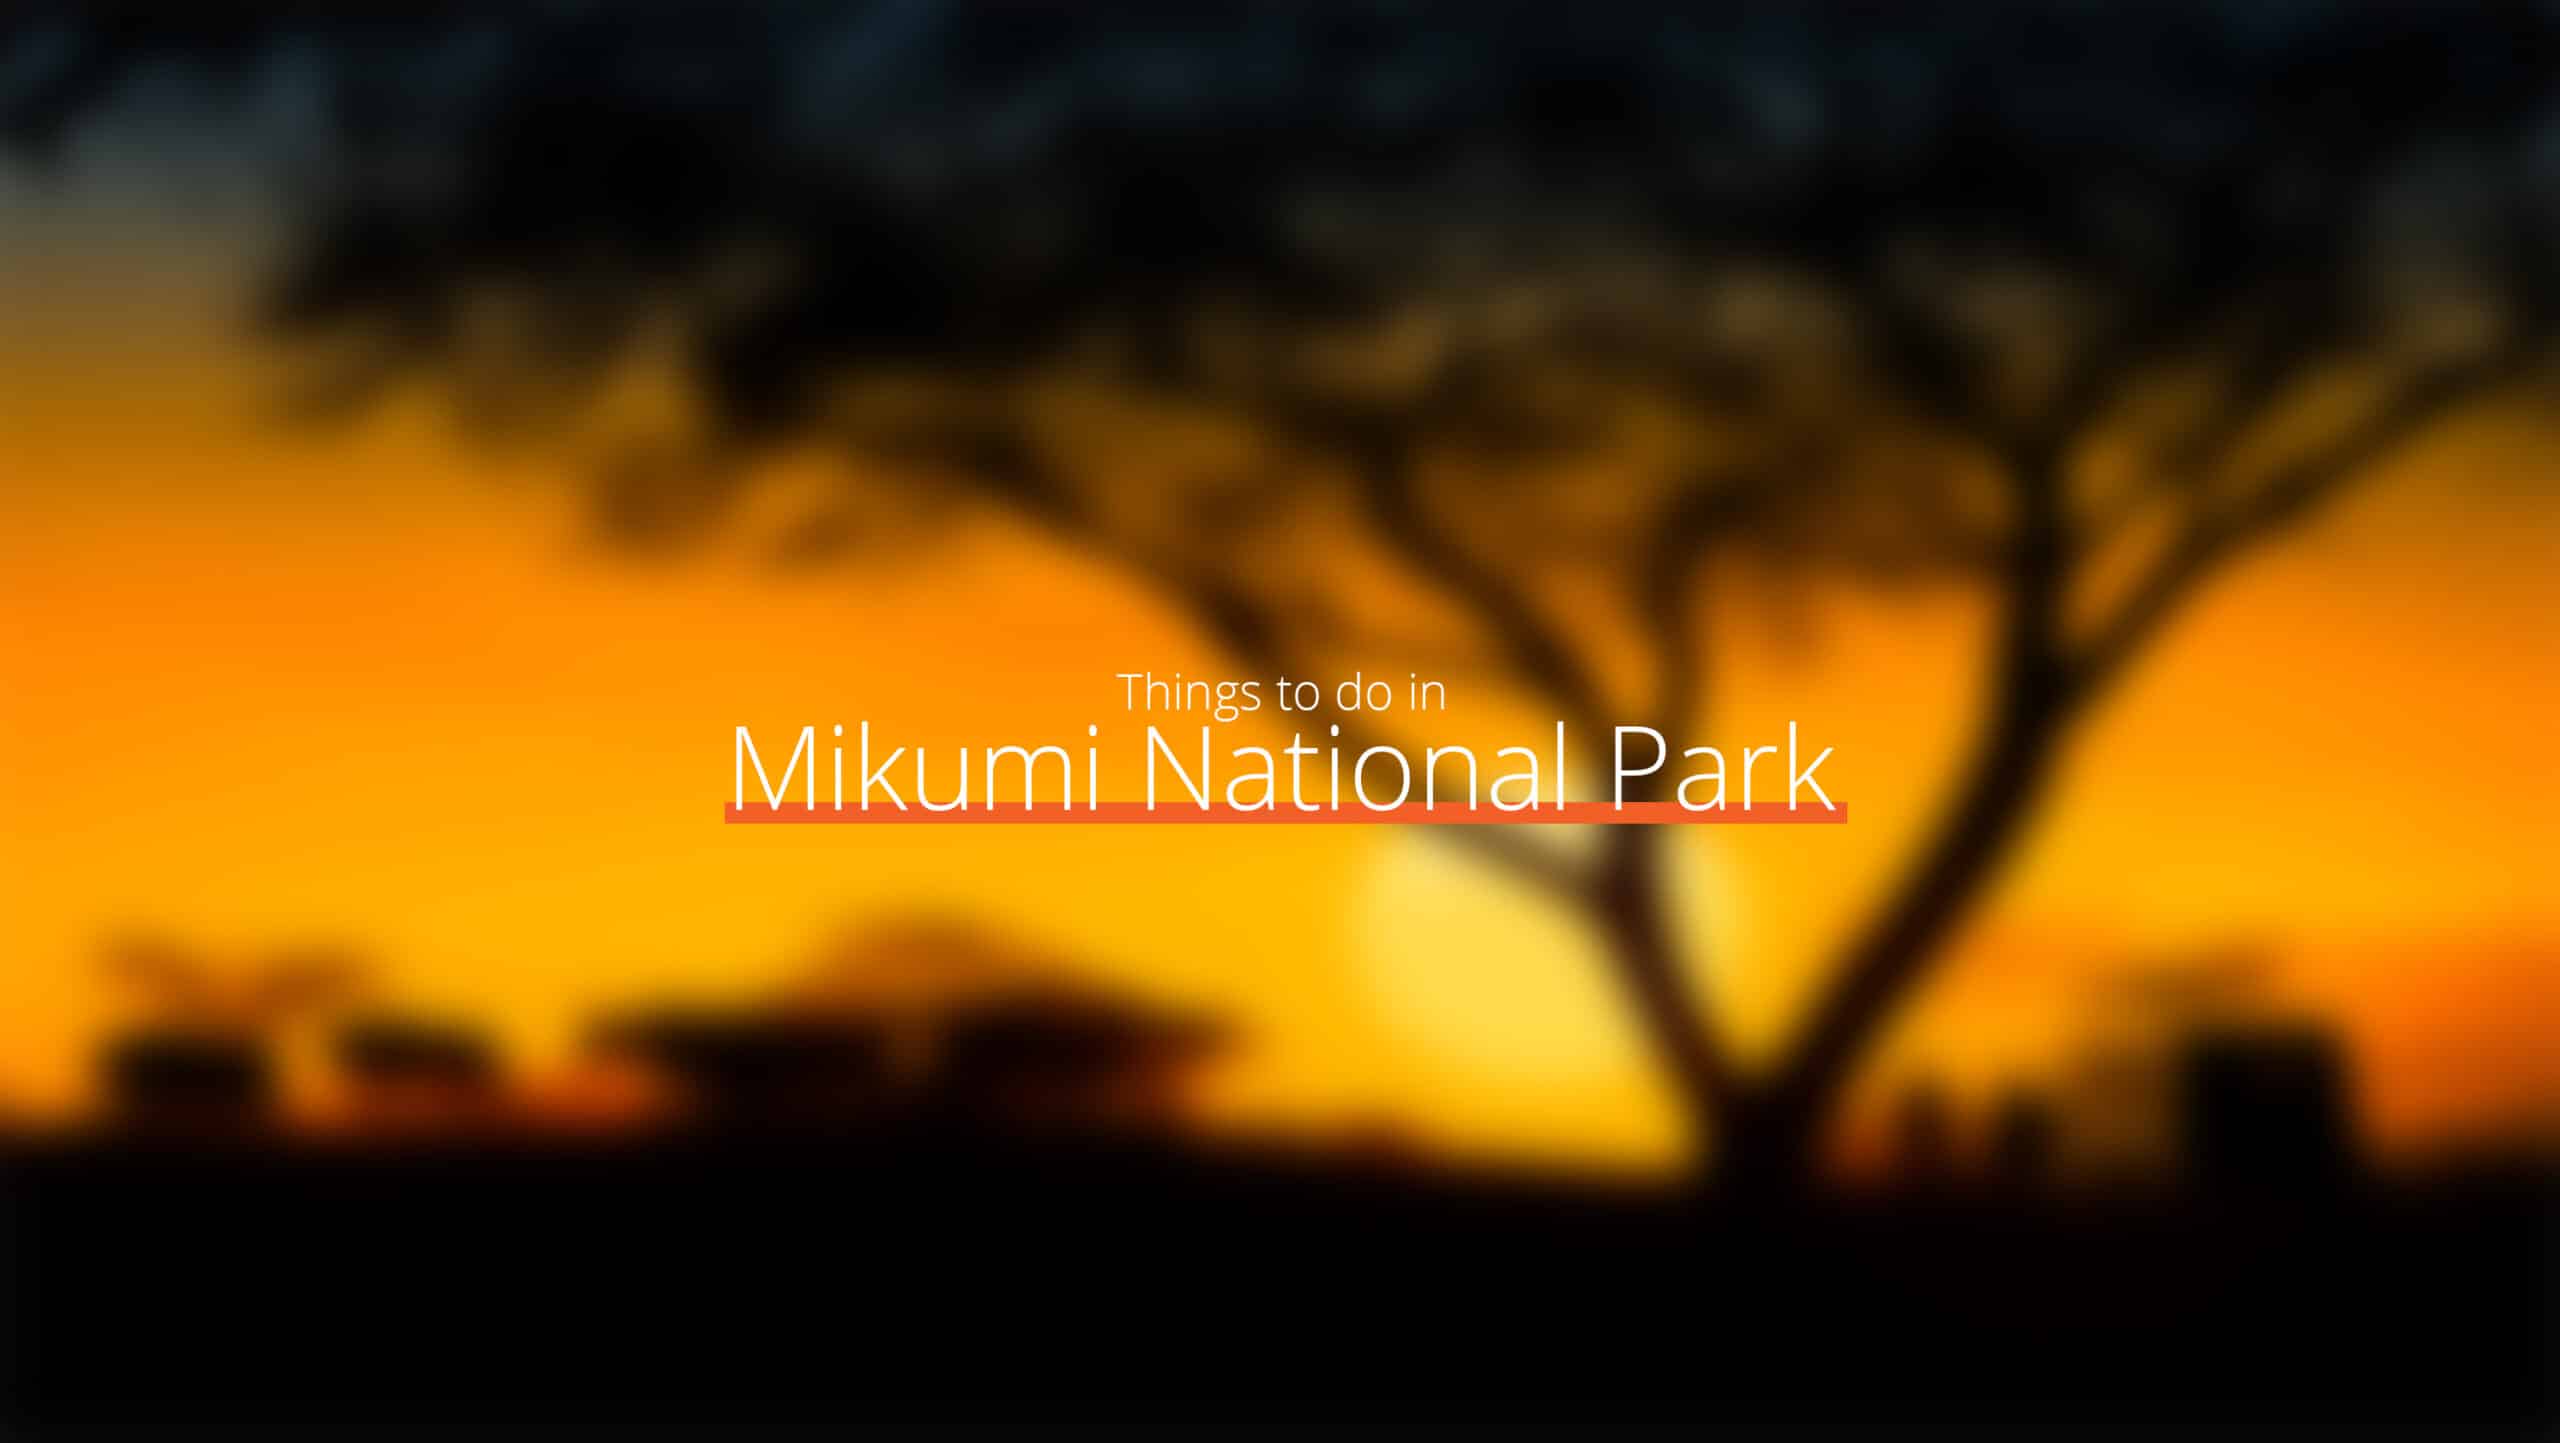 坦桑尼亚 - mikumi 国家公园 1 级 - 东部环线的去处